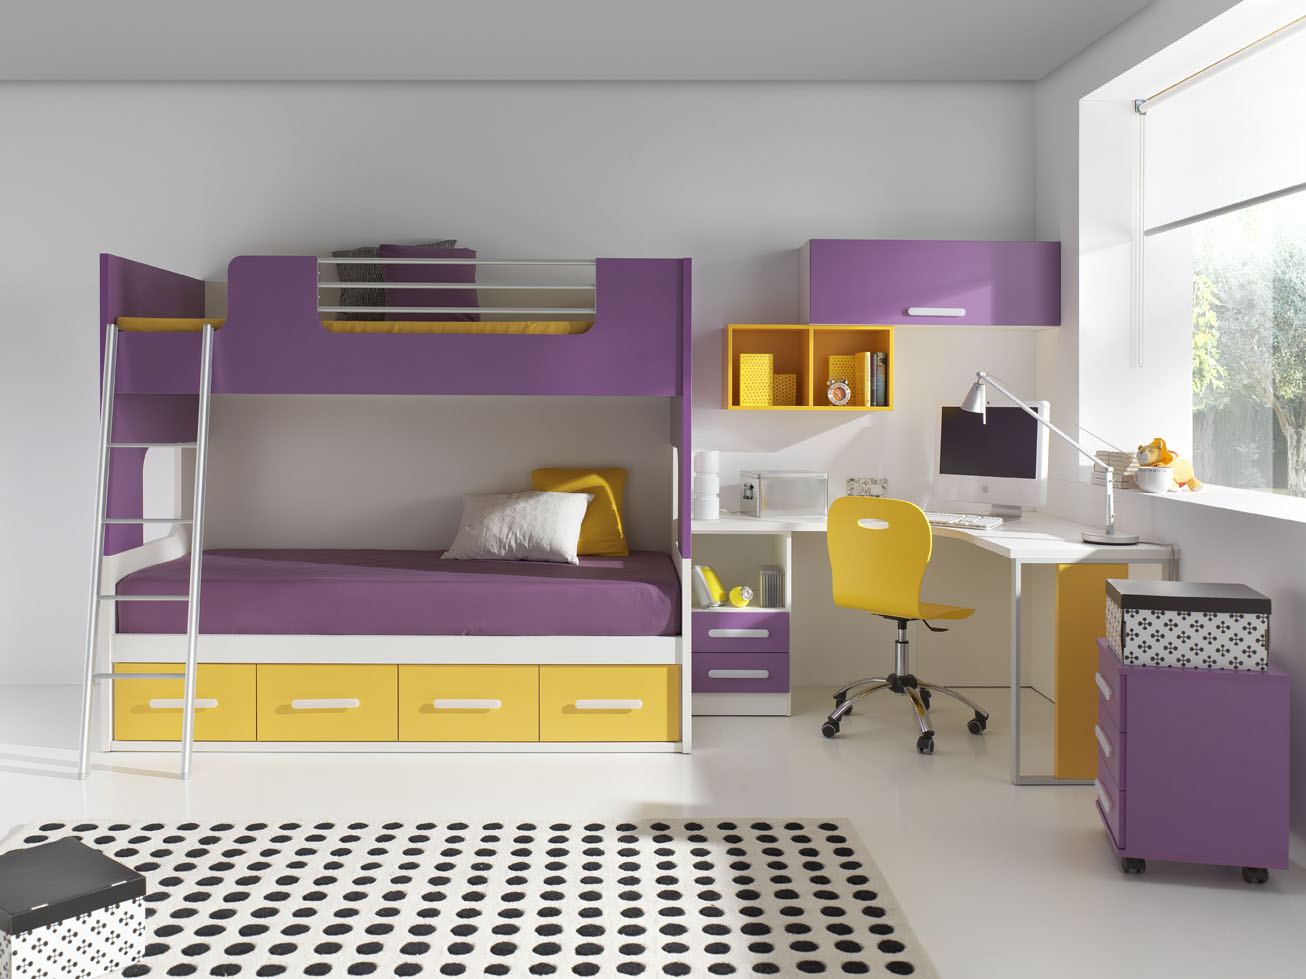 Habitaciones juveniles pequeñas: maximizando el espacio con estilo -  Información útil y práctica sobre colchones